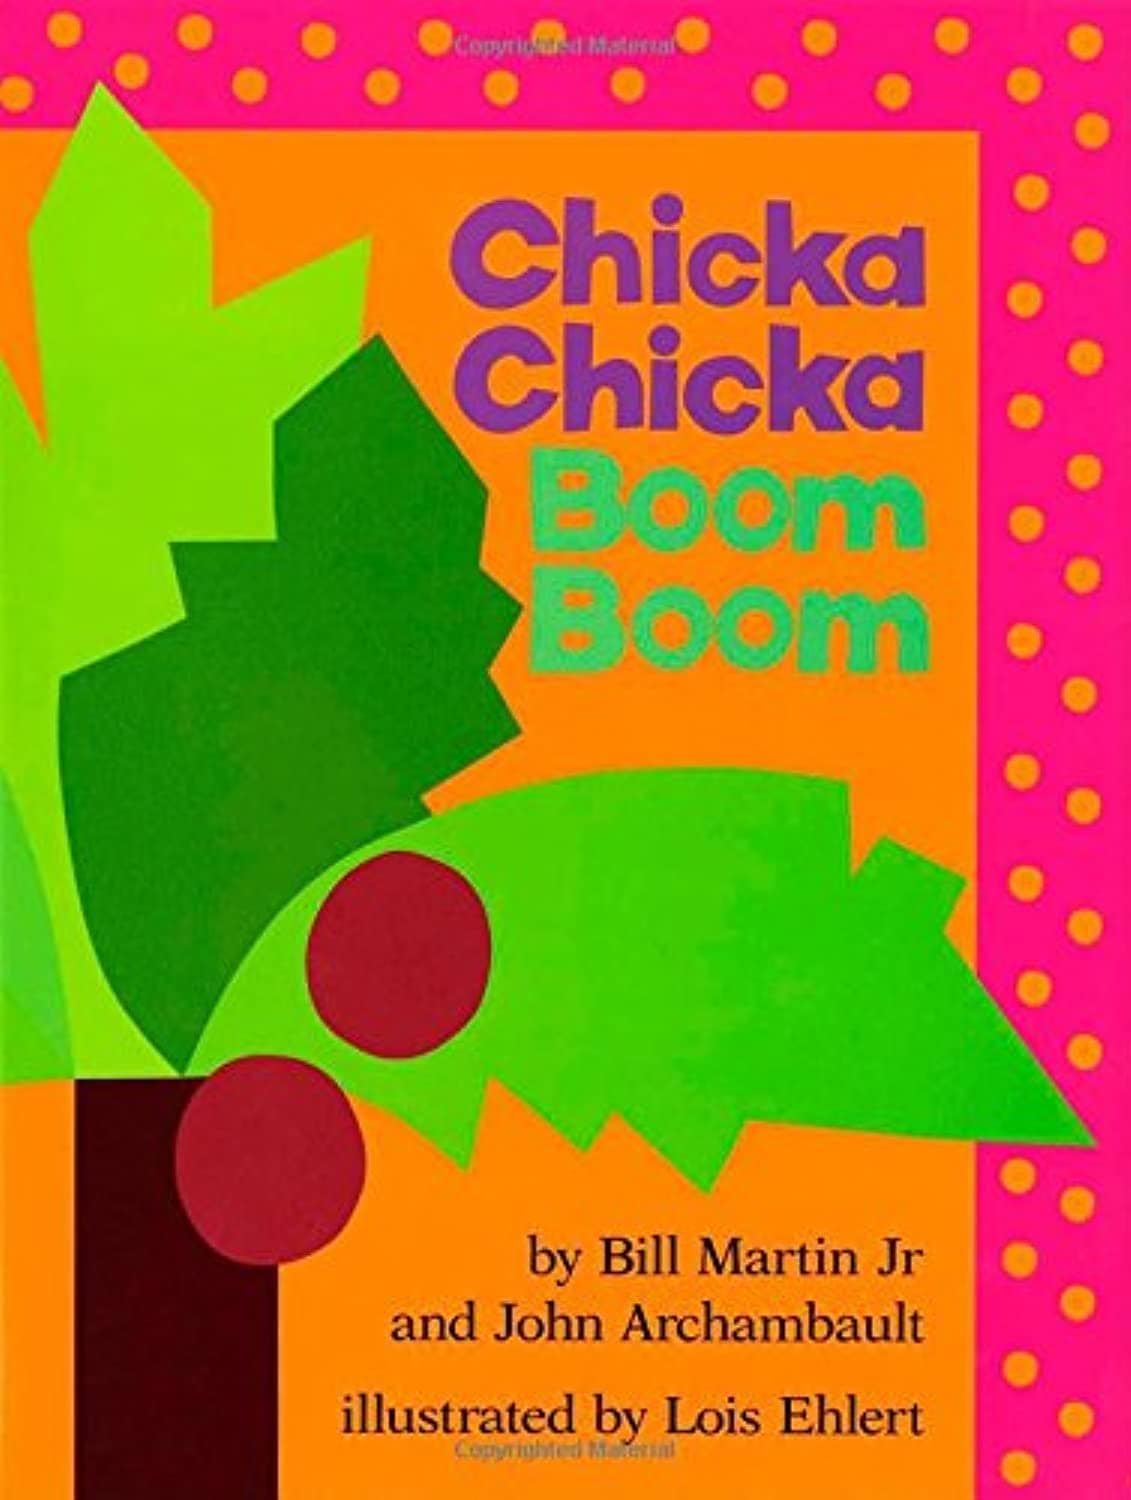 "Chicka Chicka Boom Boom" by Bill Martin, Jr.